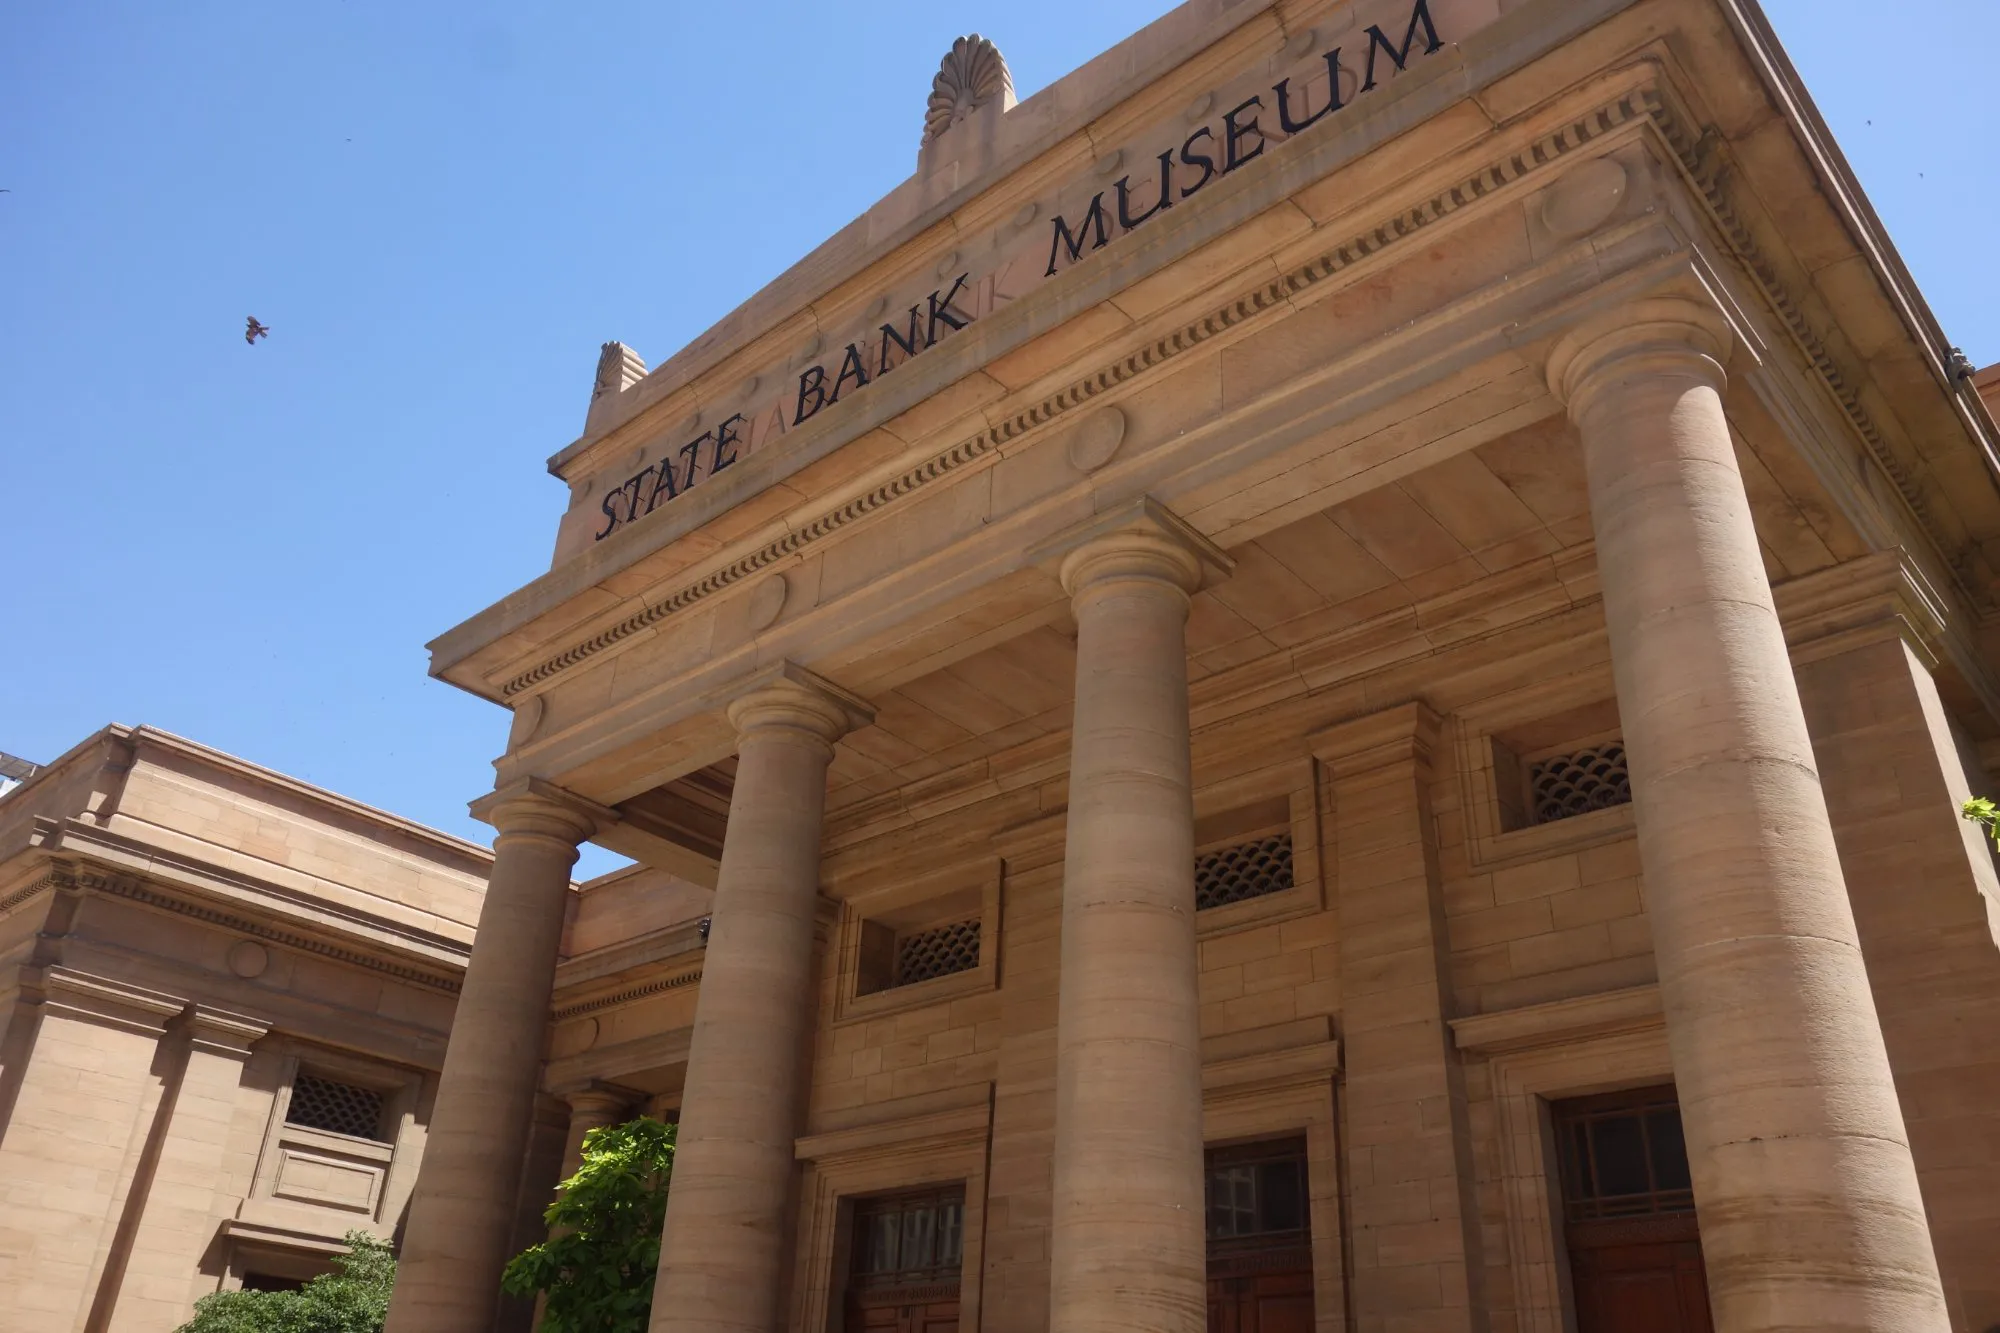 متحف بنك الدولة